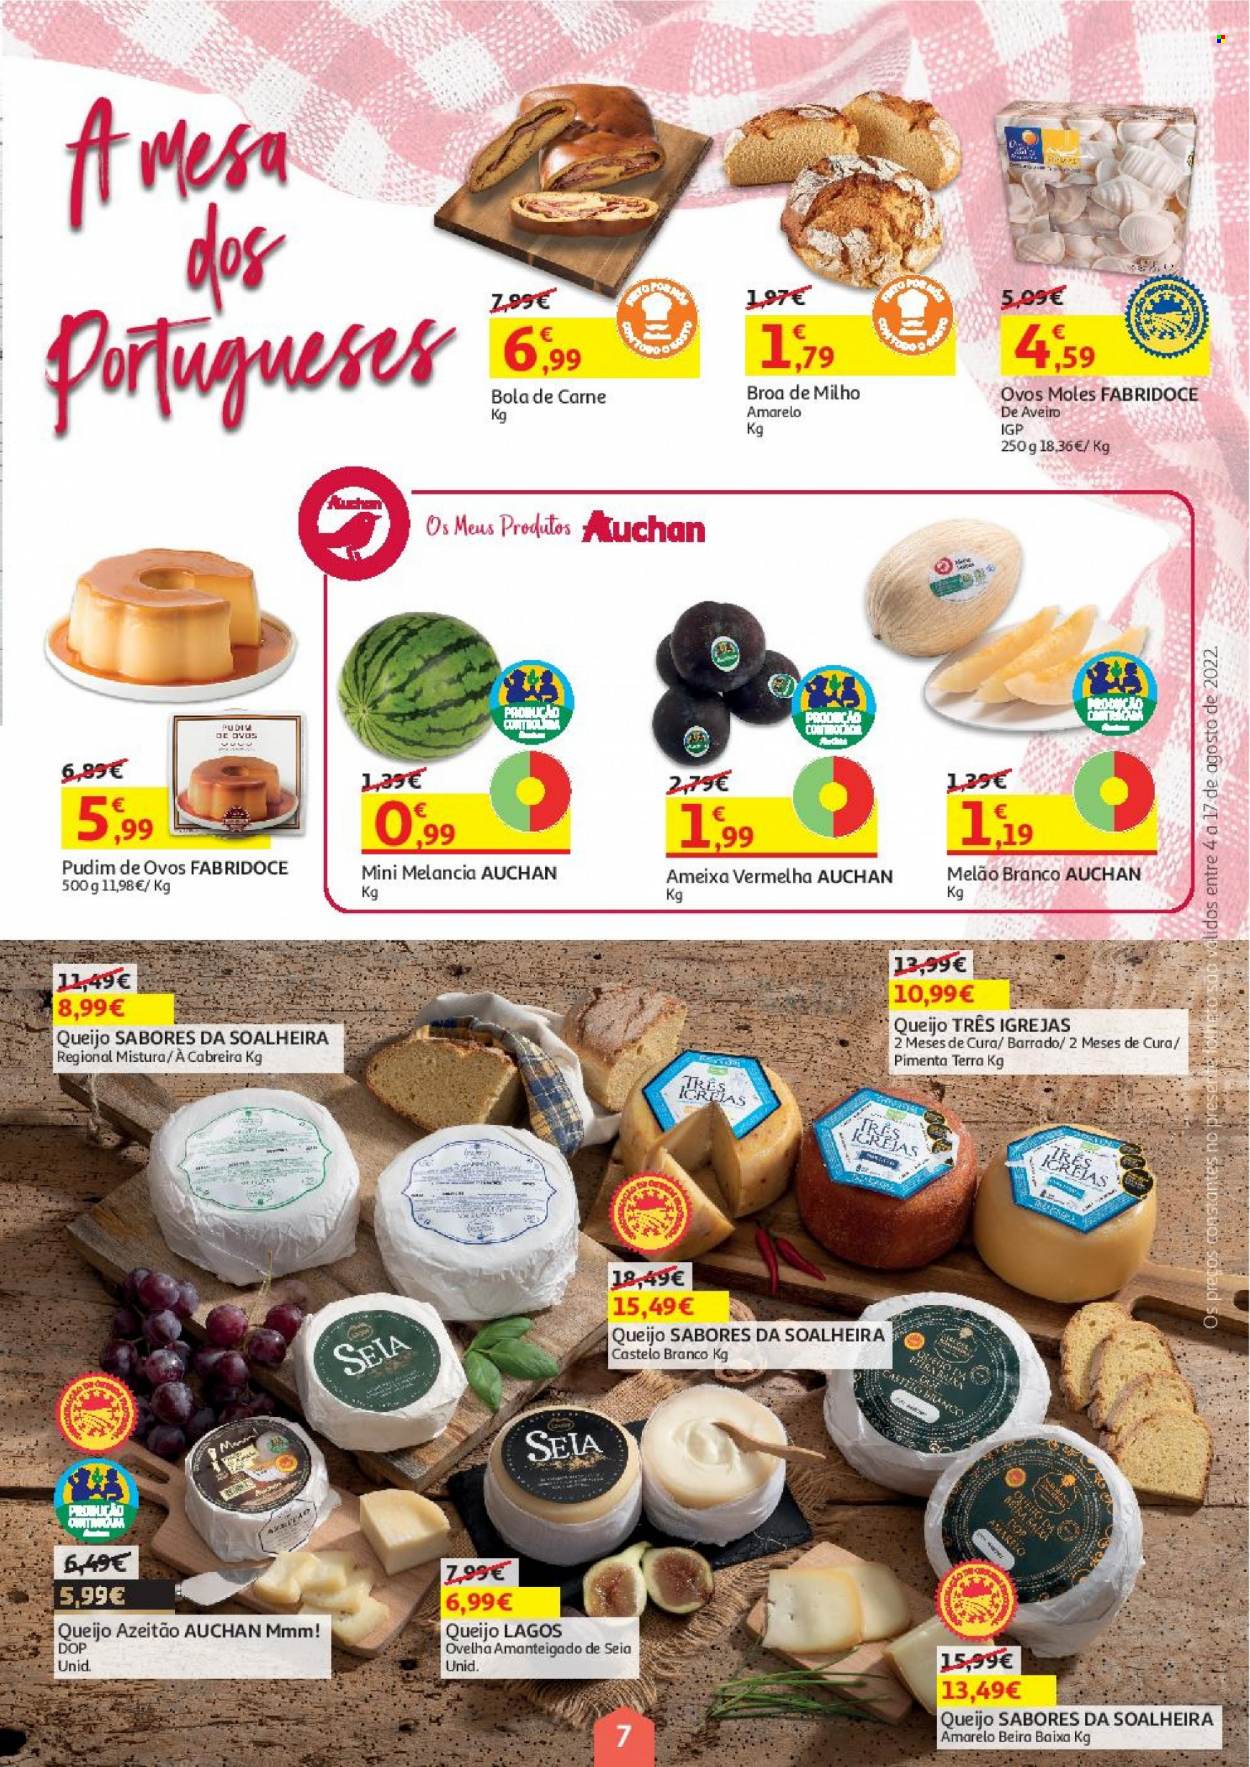 thumbnail - Folheto Auchan - 4.8.2022 - 17.8.2022 - Produtos em promoção - melão, melancia, melão branco, broa de milho, bola de carne, queijo, pudim. Página 7.